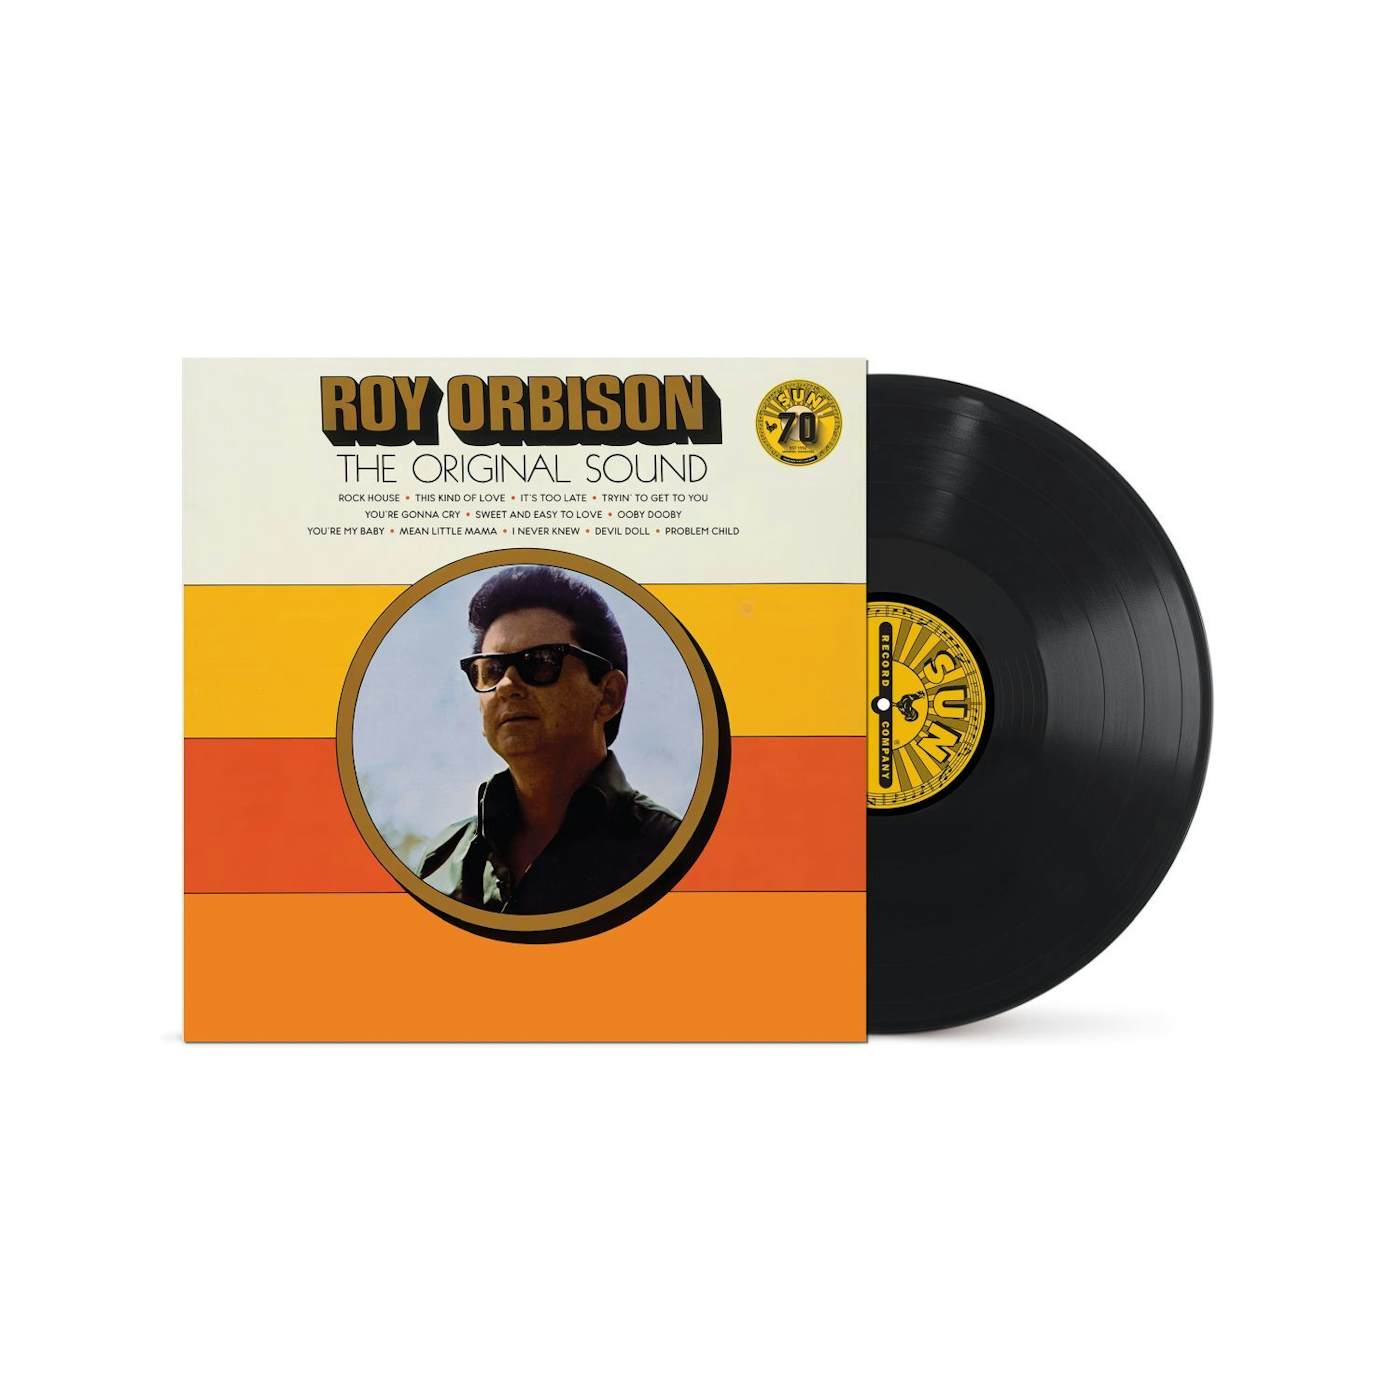 Roy Orbison - The Original Sound 180g LP (Vinyl)